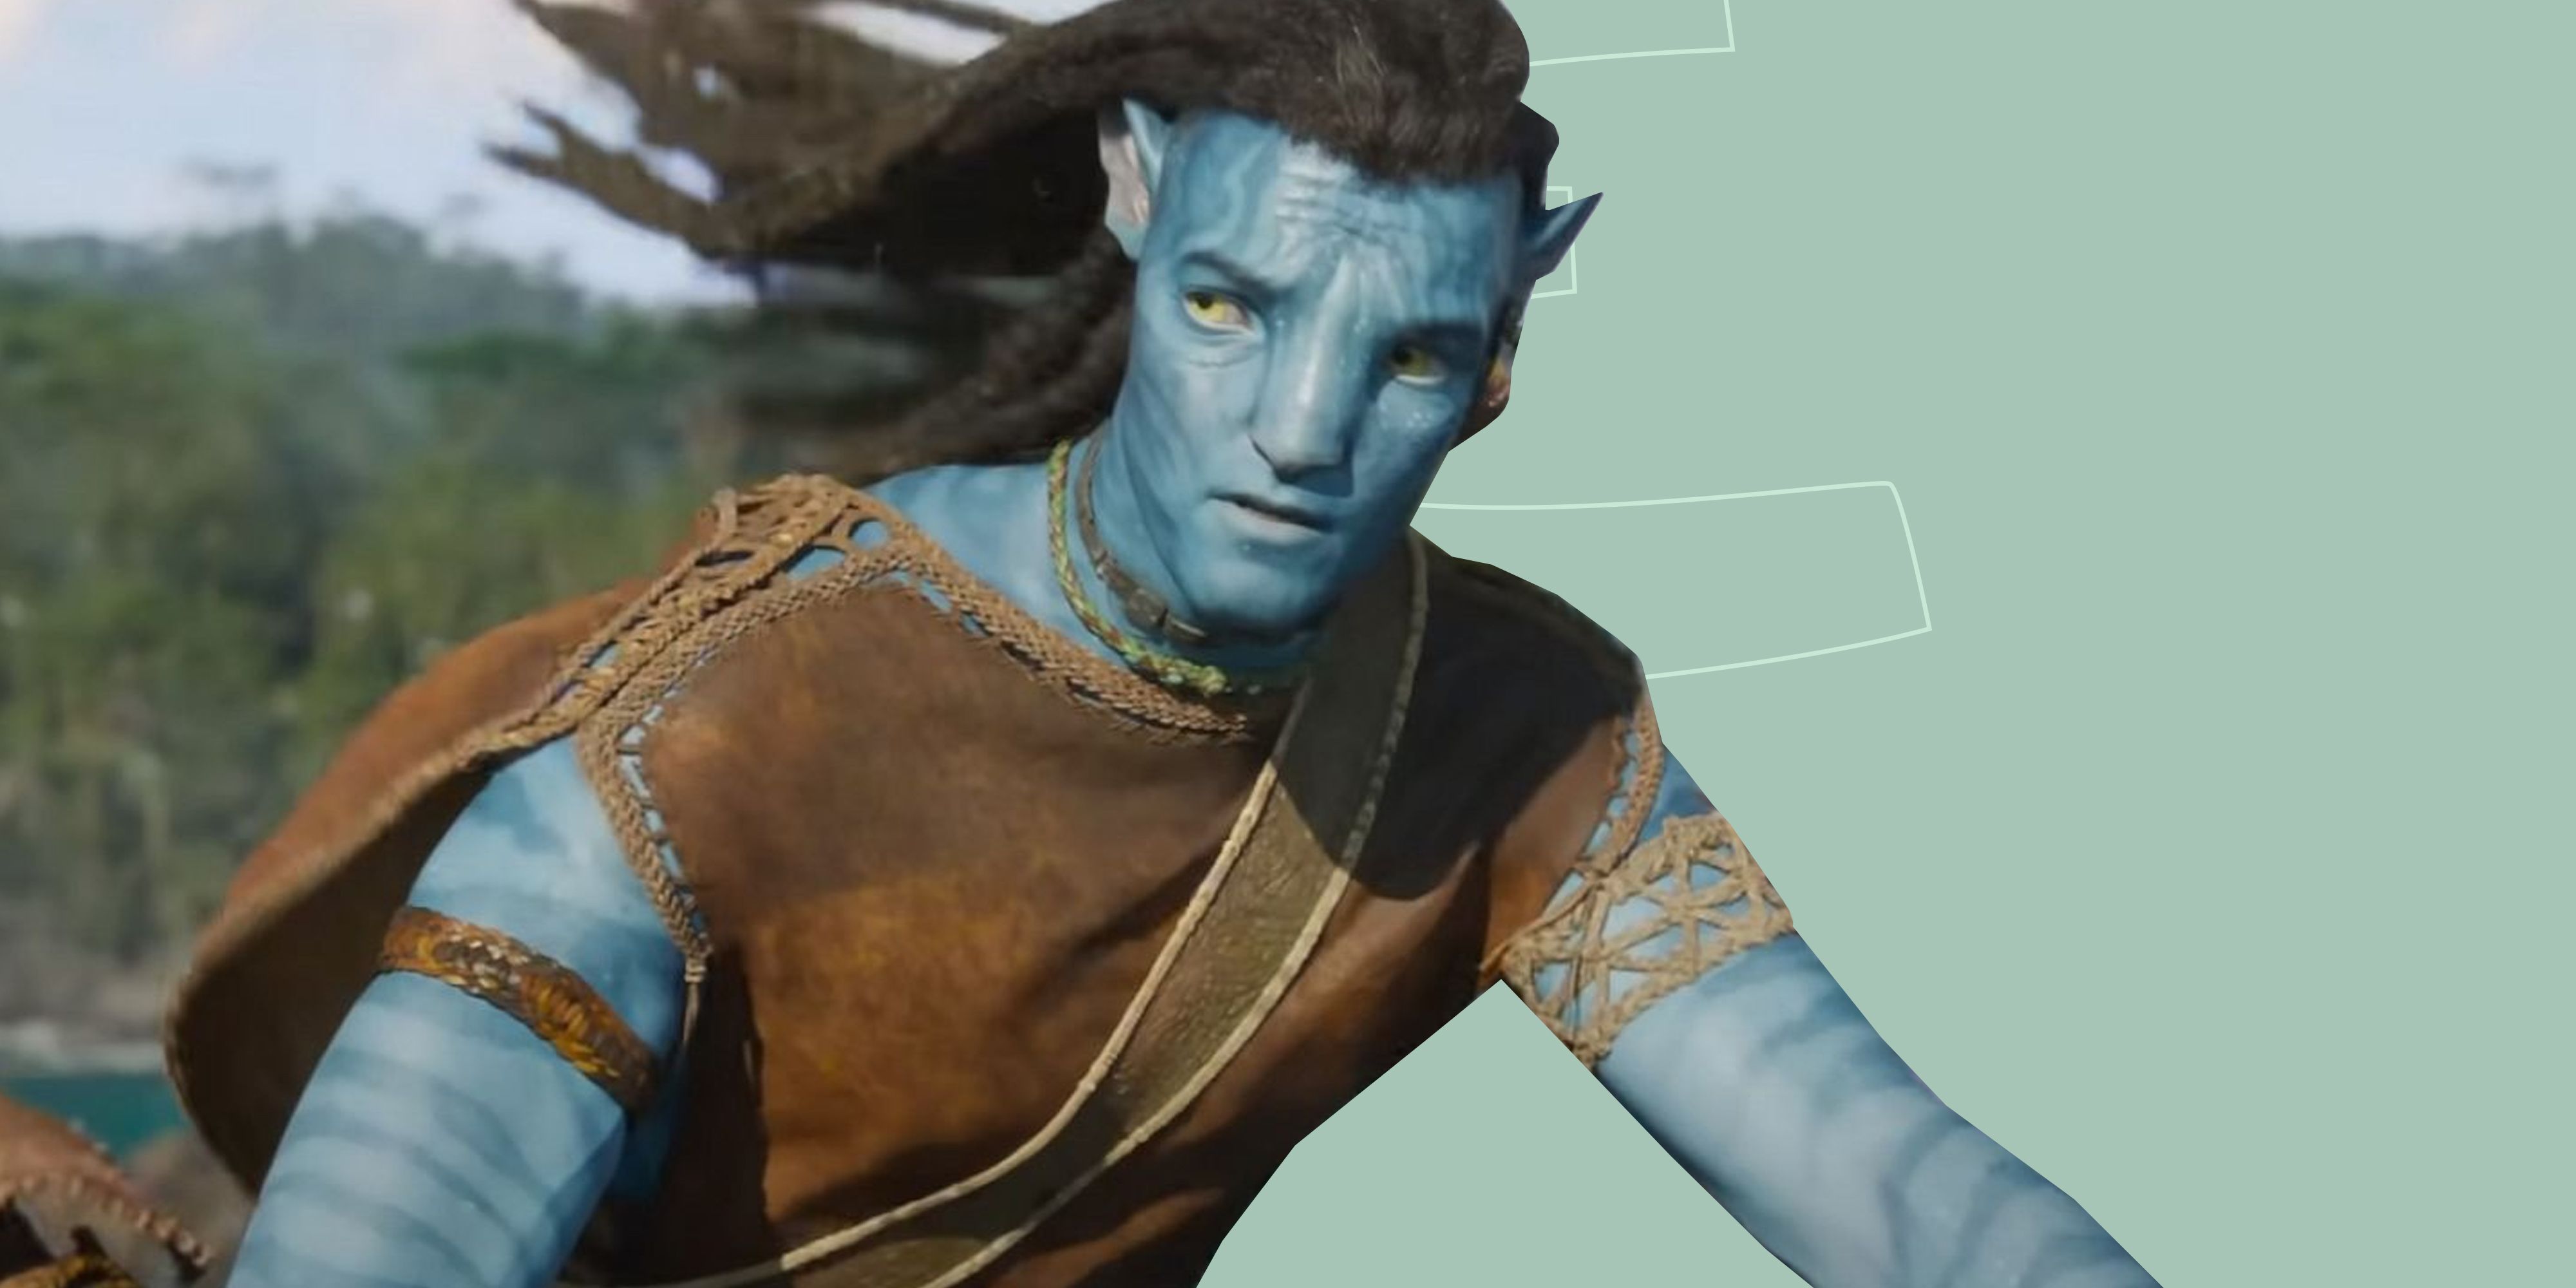 Avatar phan 3  Avatar phan 3 làm điên đảo giới yêu phim